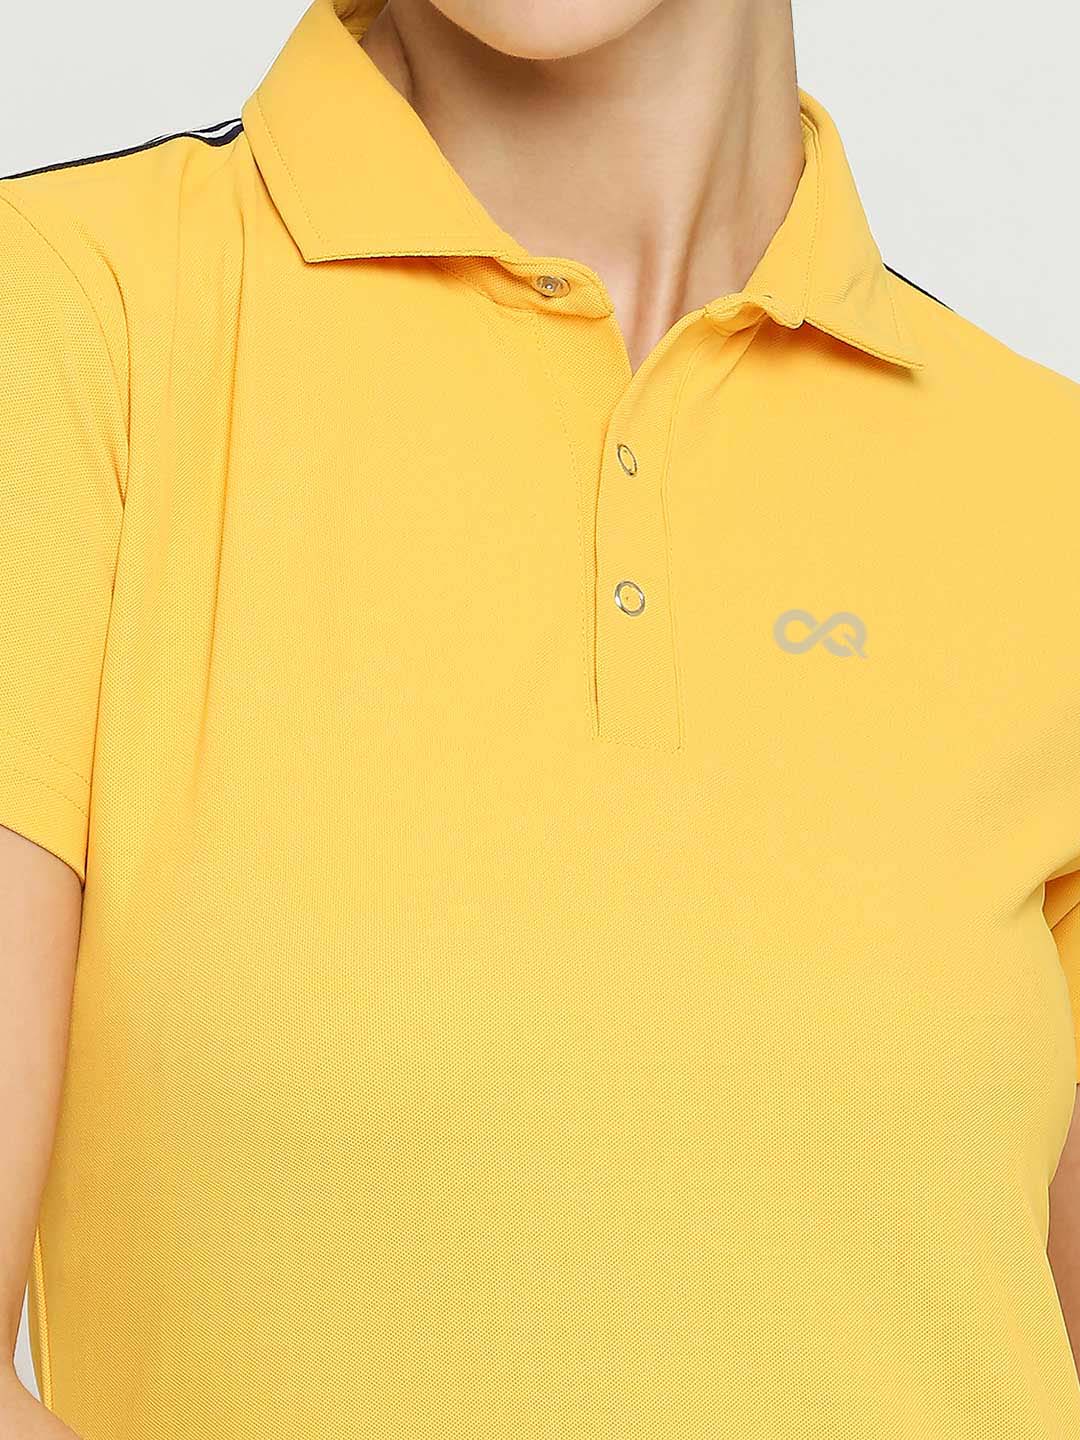 Women's Golf Polo Shirt - Yellow